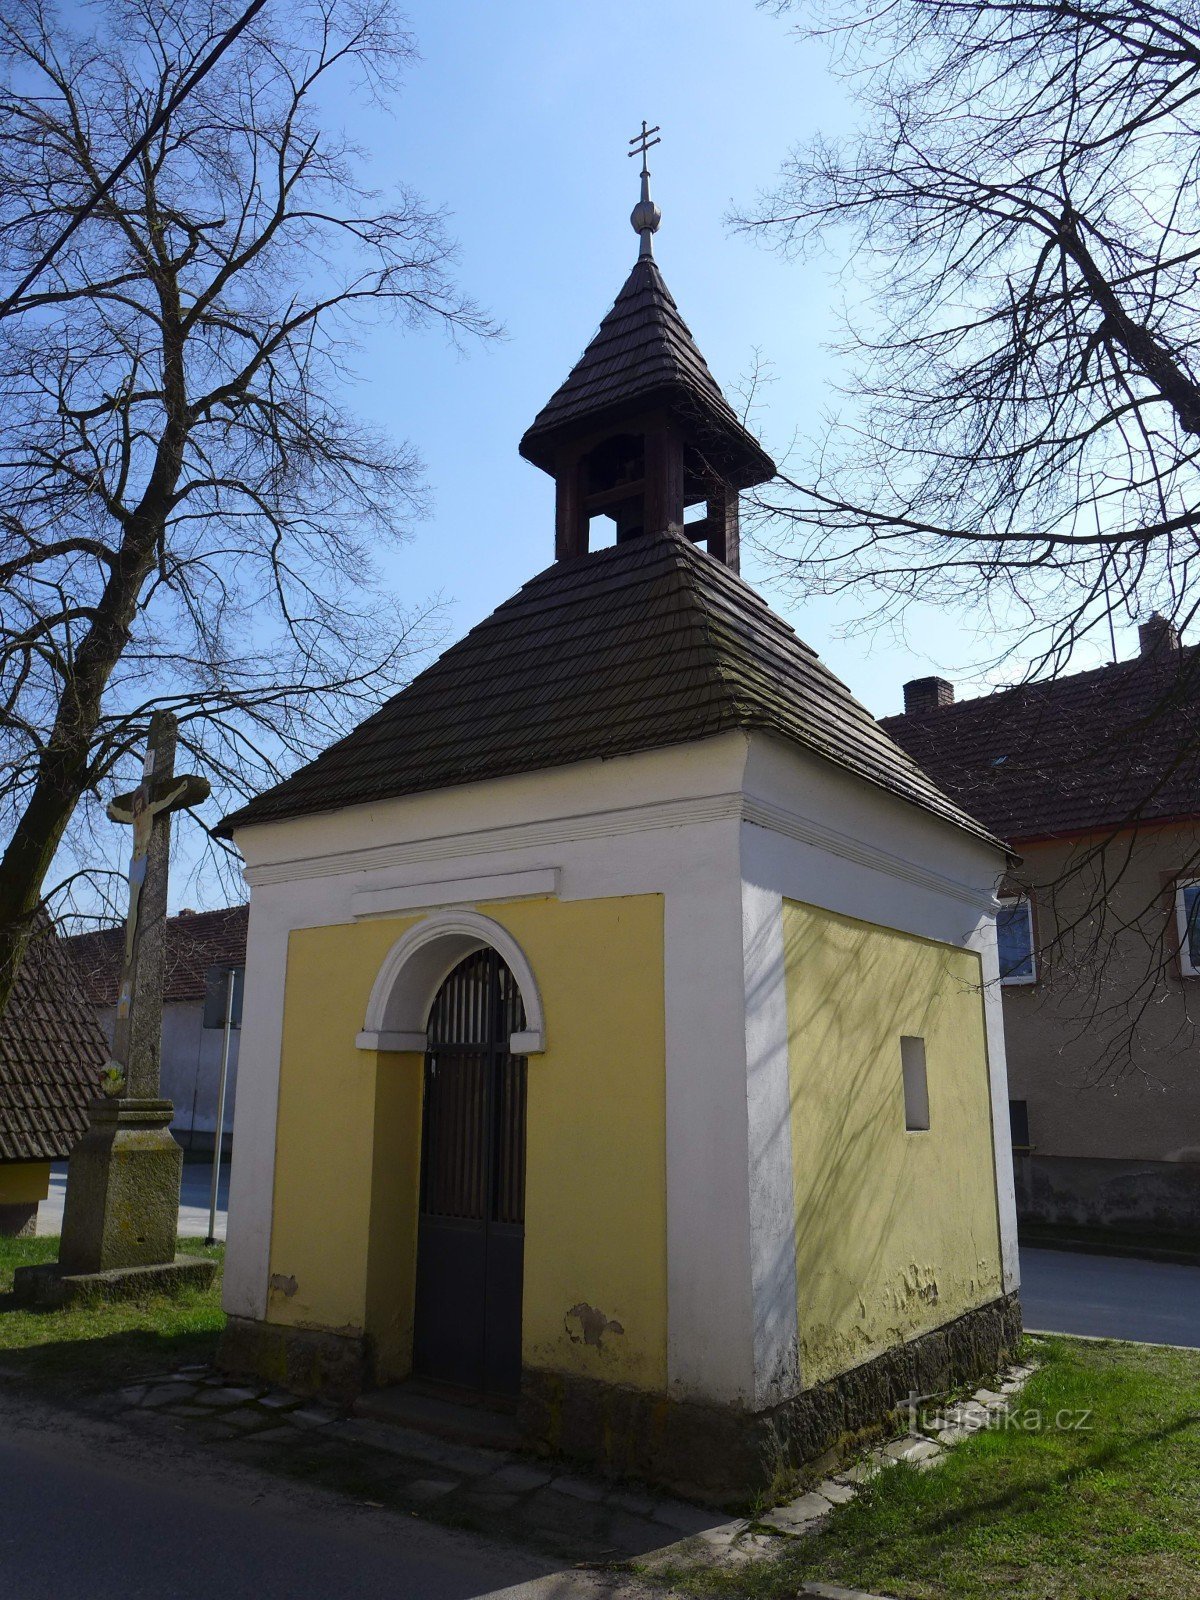 Armband - Chapel of St. Jan Nepomucký